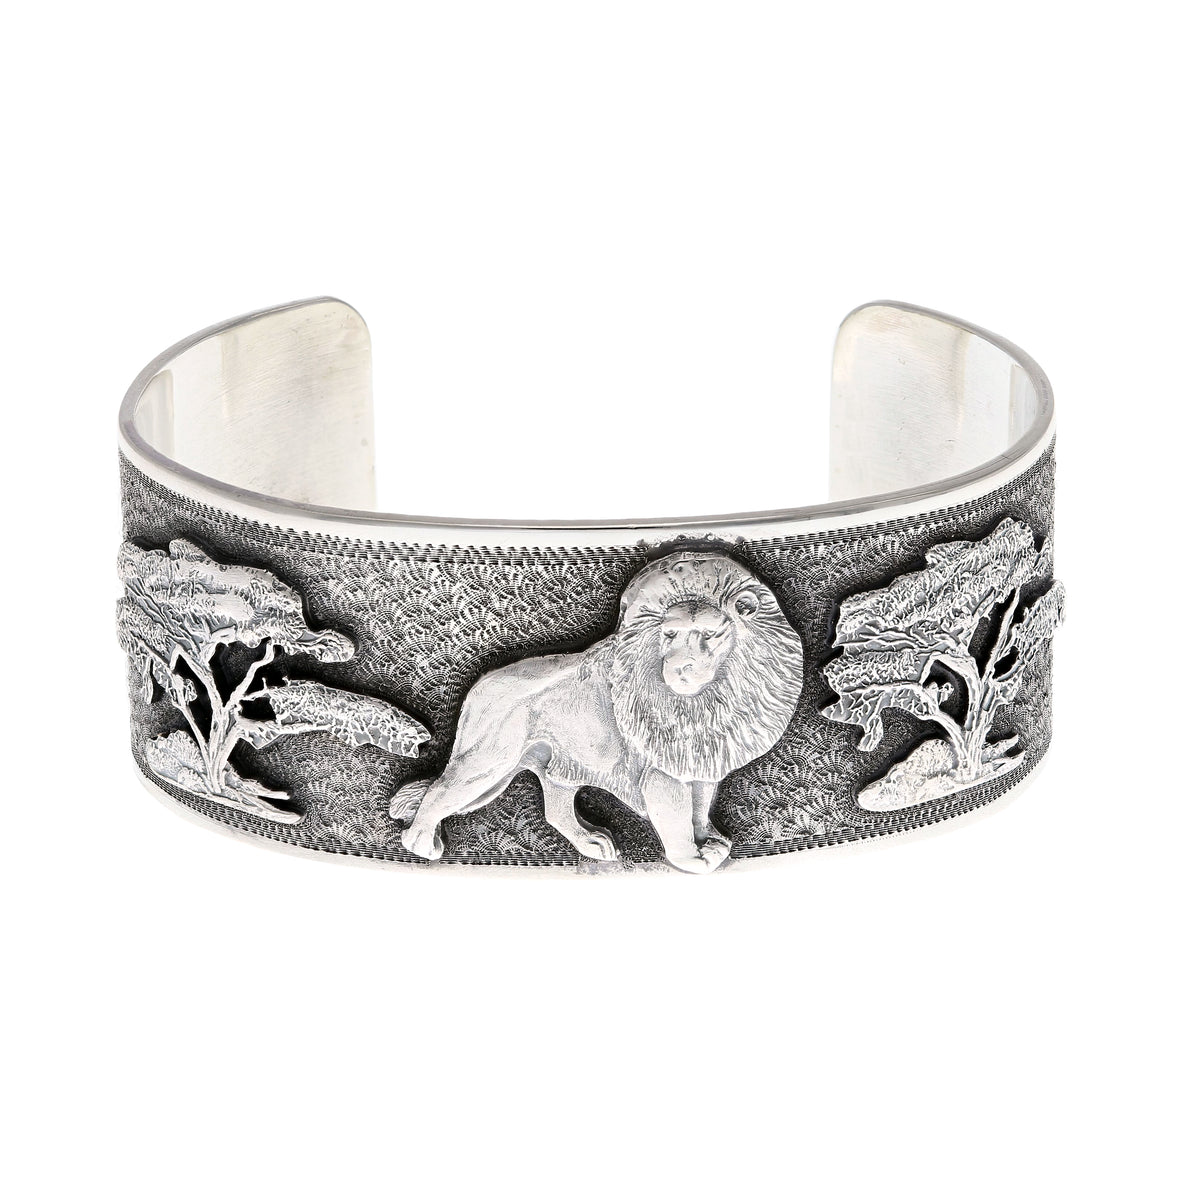 Bracelet 1604 Silver Lion on Savanna